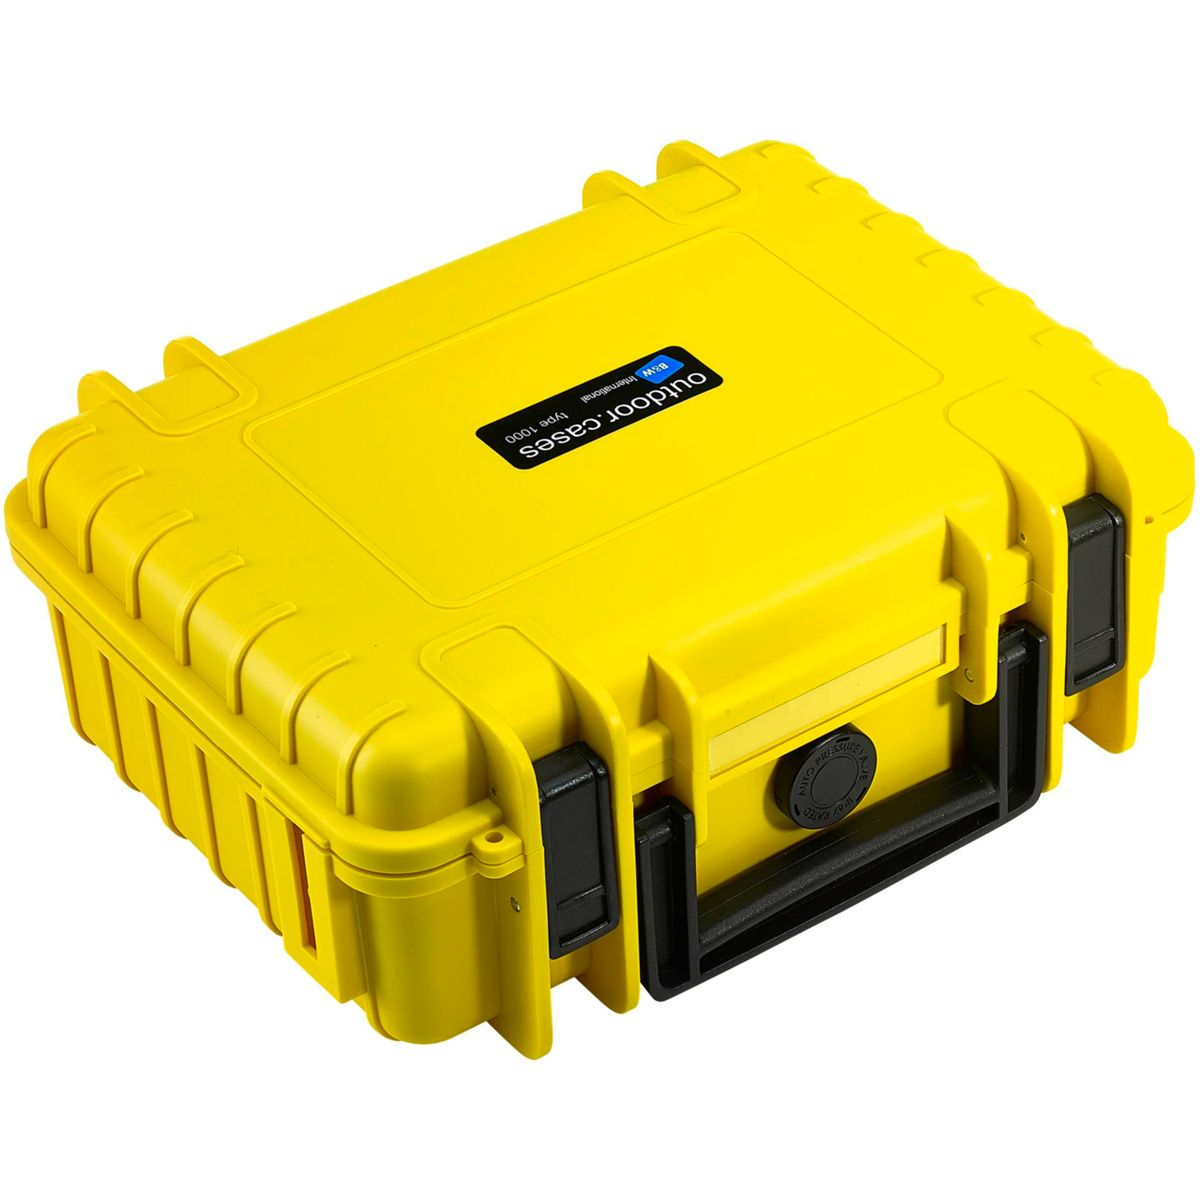 mit Outdoor Facheinteilung Typ B&W INTERNATIONAL anpassbarer Hartschalenkoffer Case 1000 gelb